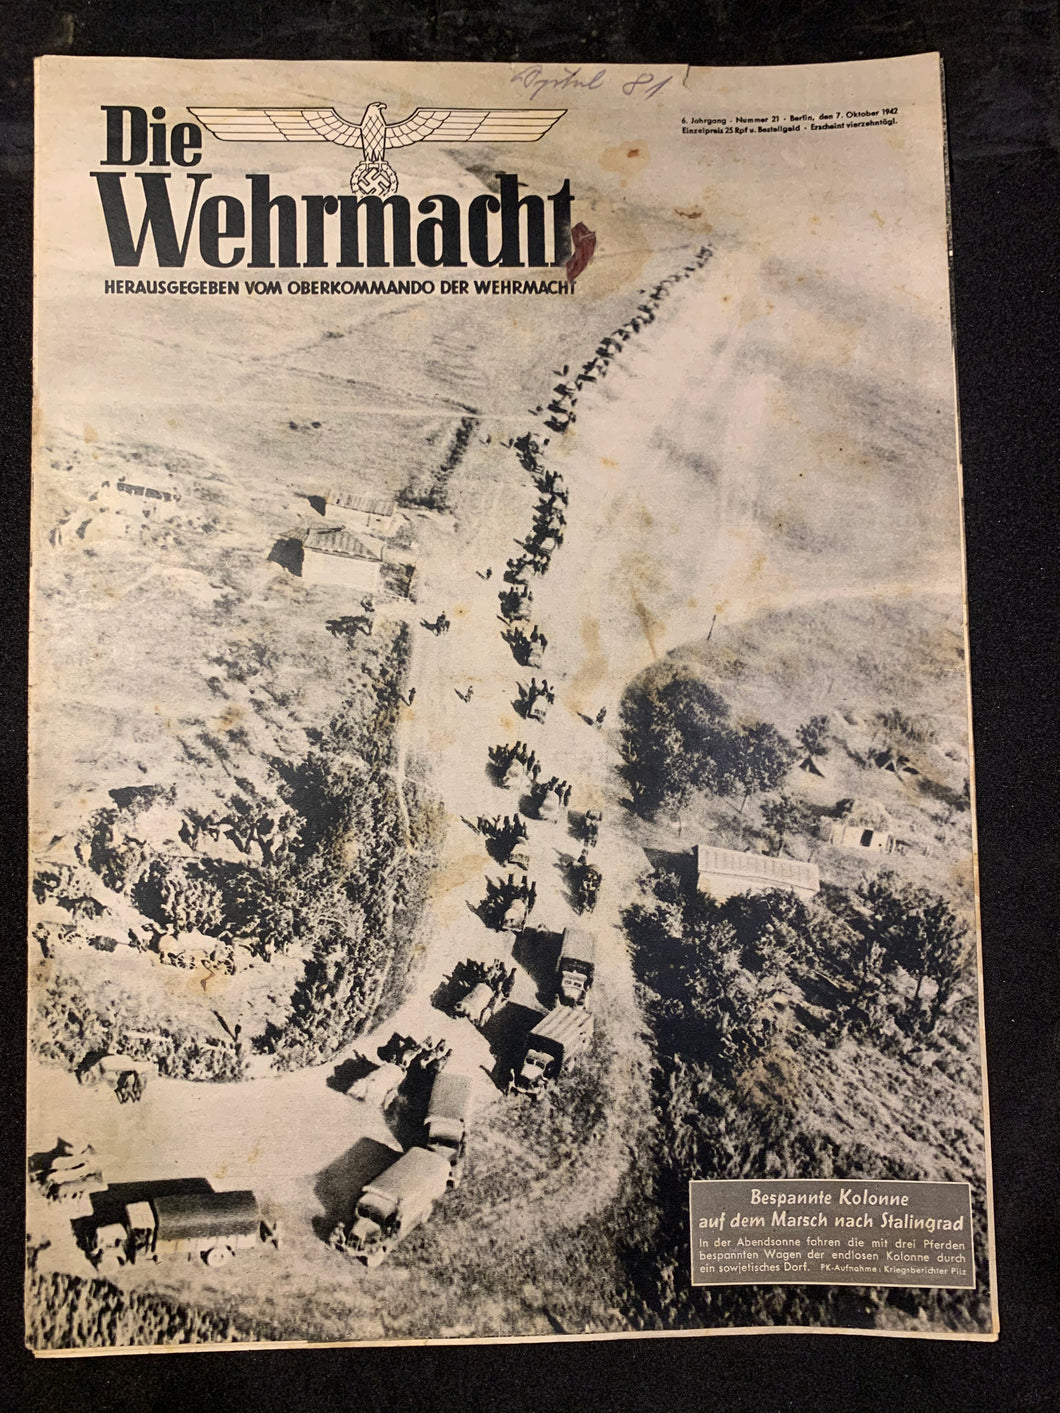 Die Wehrmacht Magazine Original WW2 allemand - 7 octobre 1942 - #48